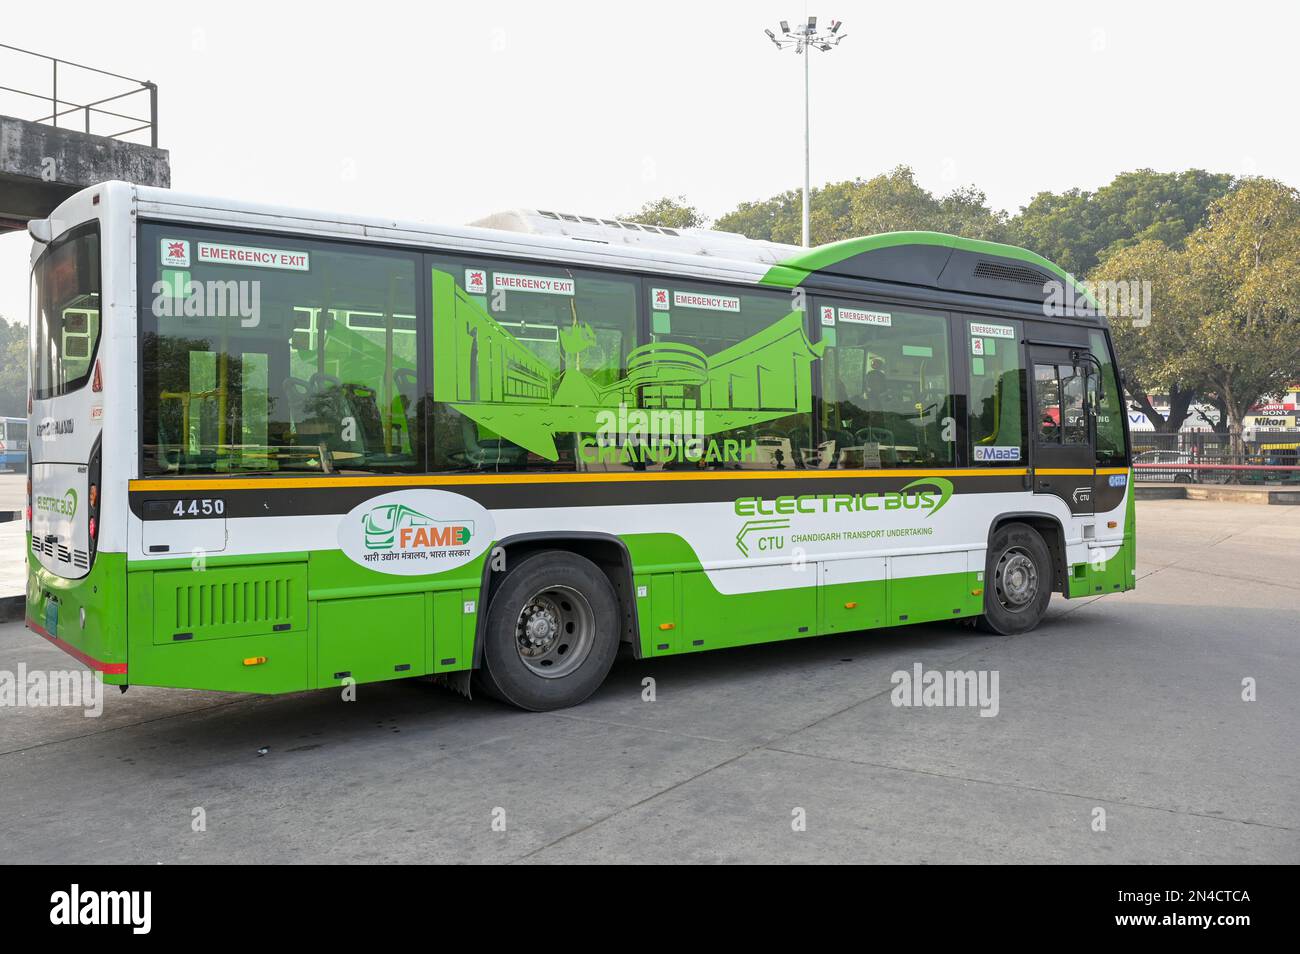 INDIEN, Chandigarh, Sektor 17, lokaler Busbahnhof, Ashok Leyland Elektrobus für öffentliche Verkehrsmittel Stockfoto